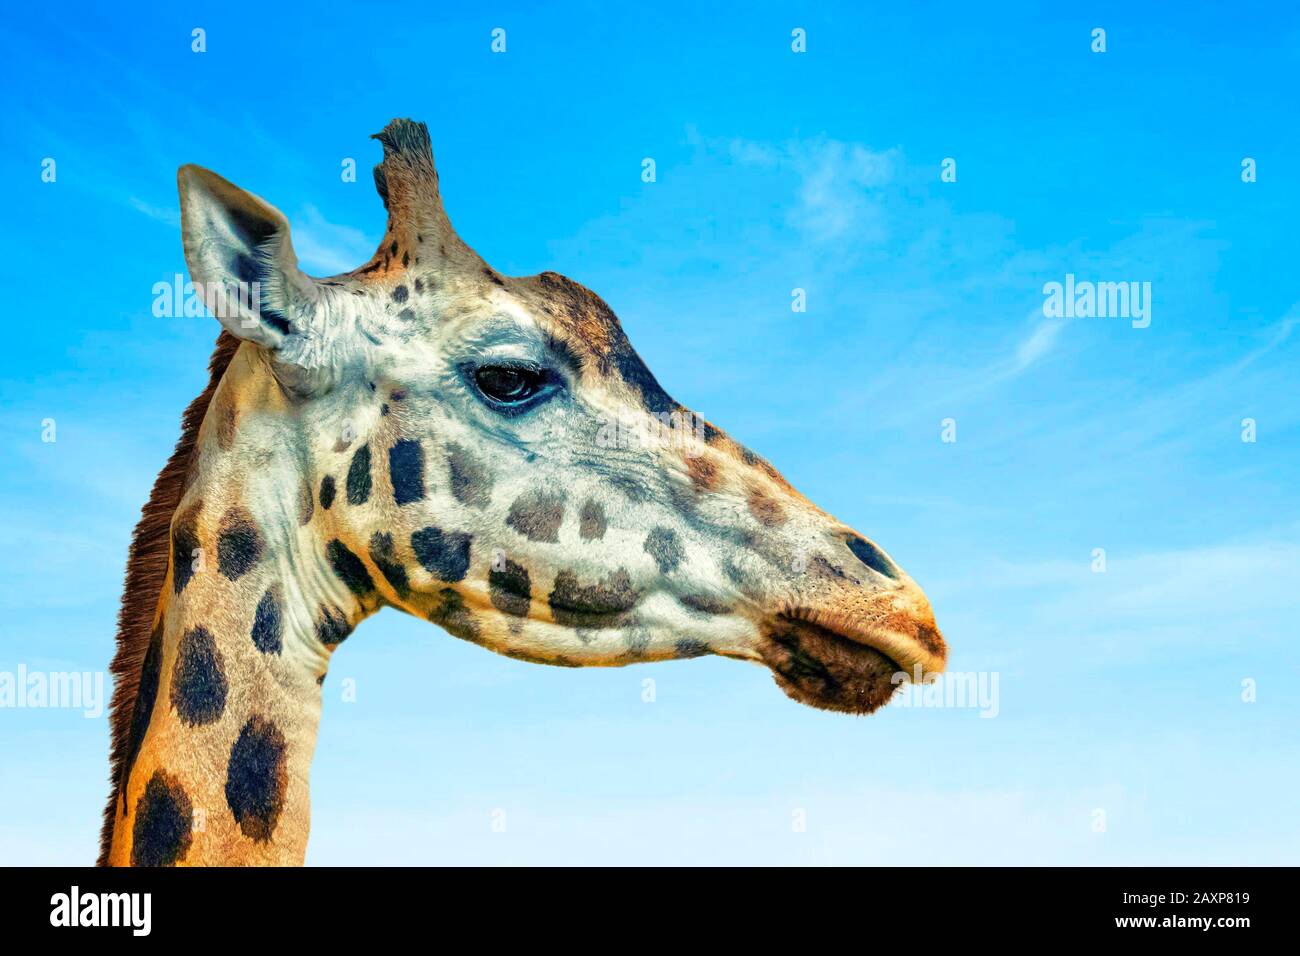 Primo piano foto della testa della giraffa, giraffa. È una foto del profilo, mammifero africano artiodattile, è foto della fauna selvatica in safari. Il cielo blu è nel Foto Stock